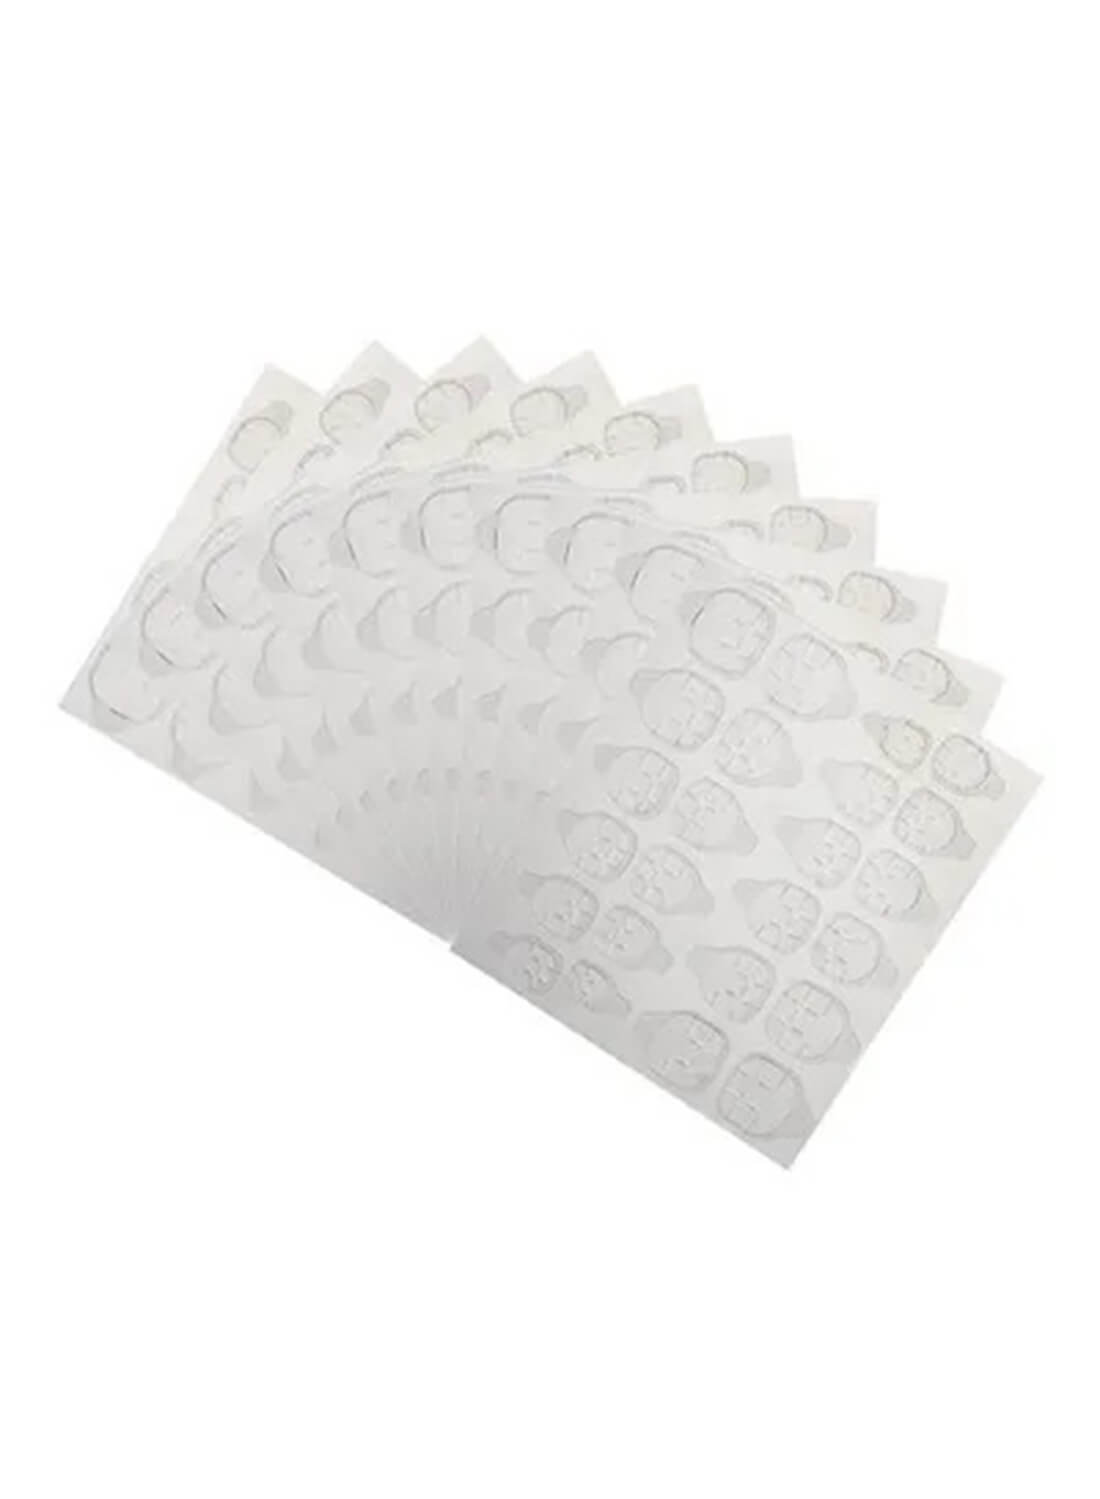 240-Piece Nail Adhesive Glue Tapes